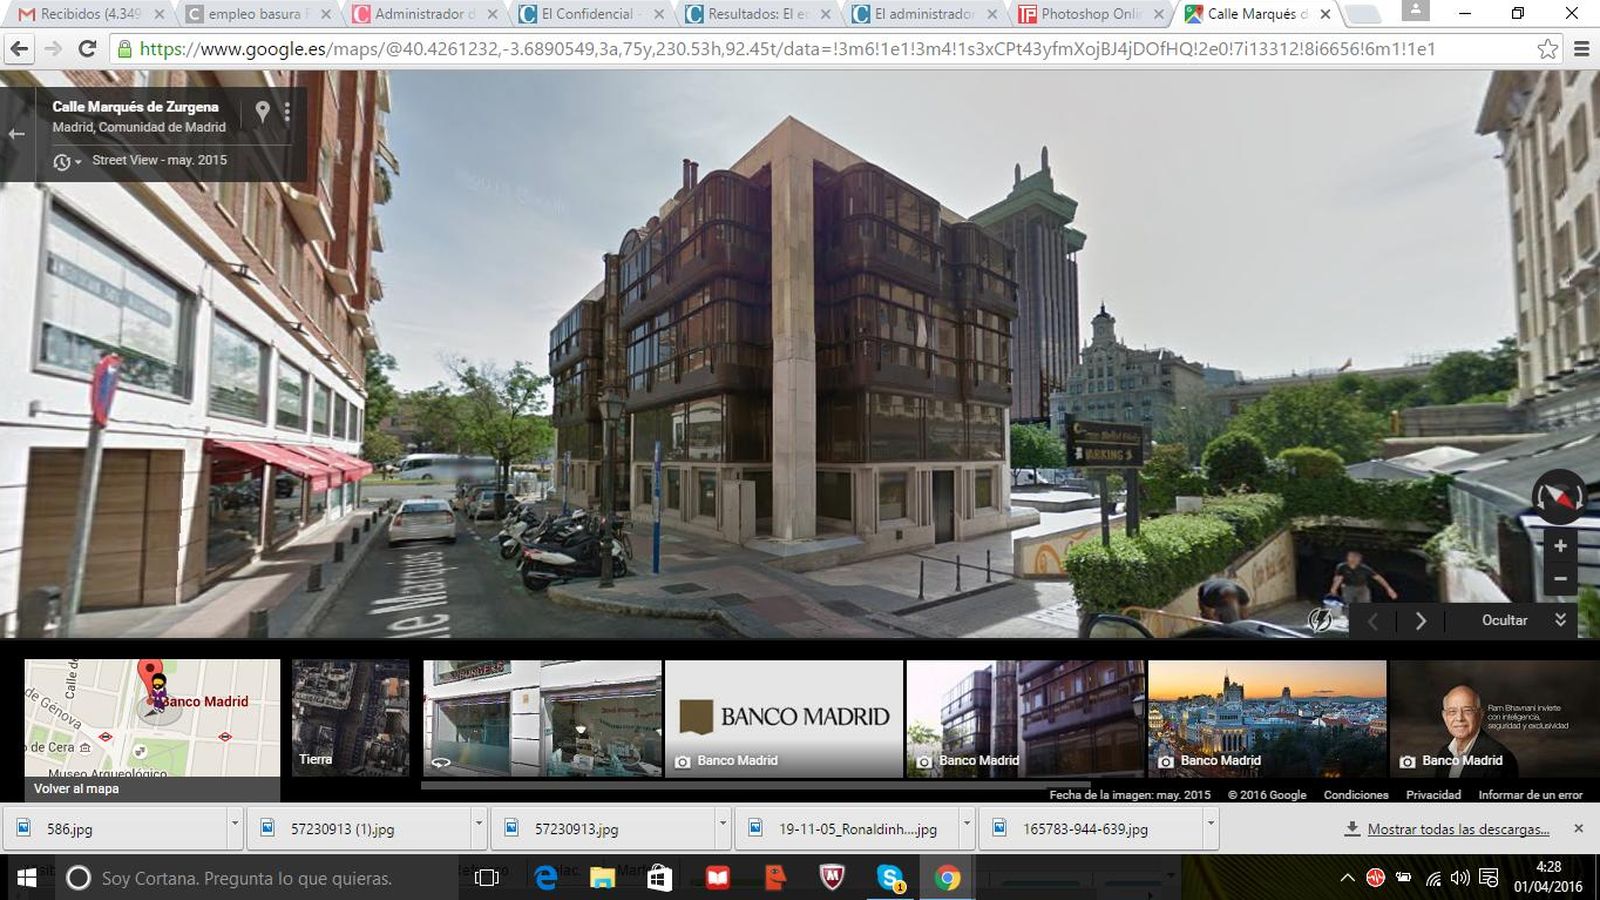 Foto: La sede de Banco Madrid en la plaza de Colón (Google maps)